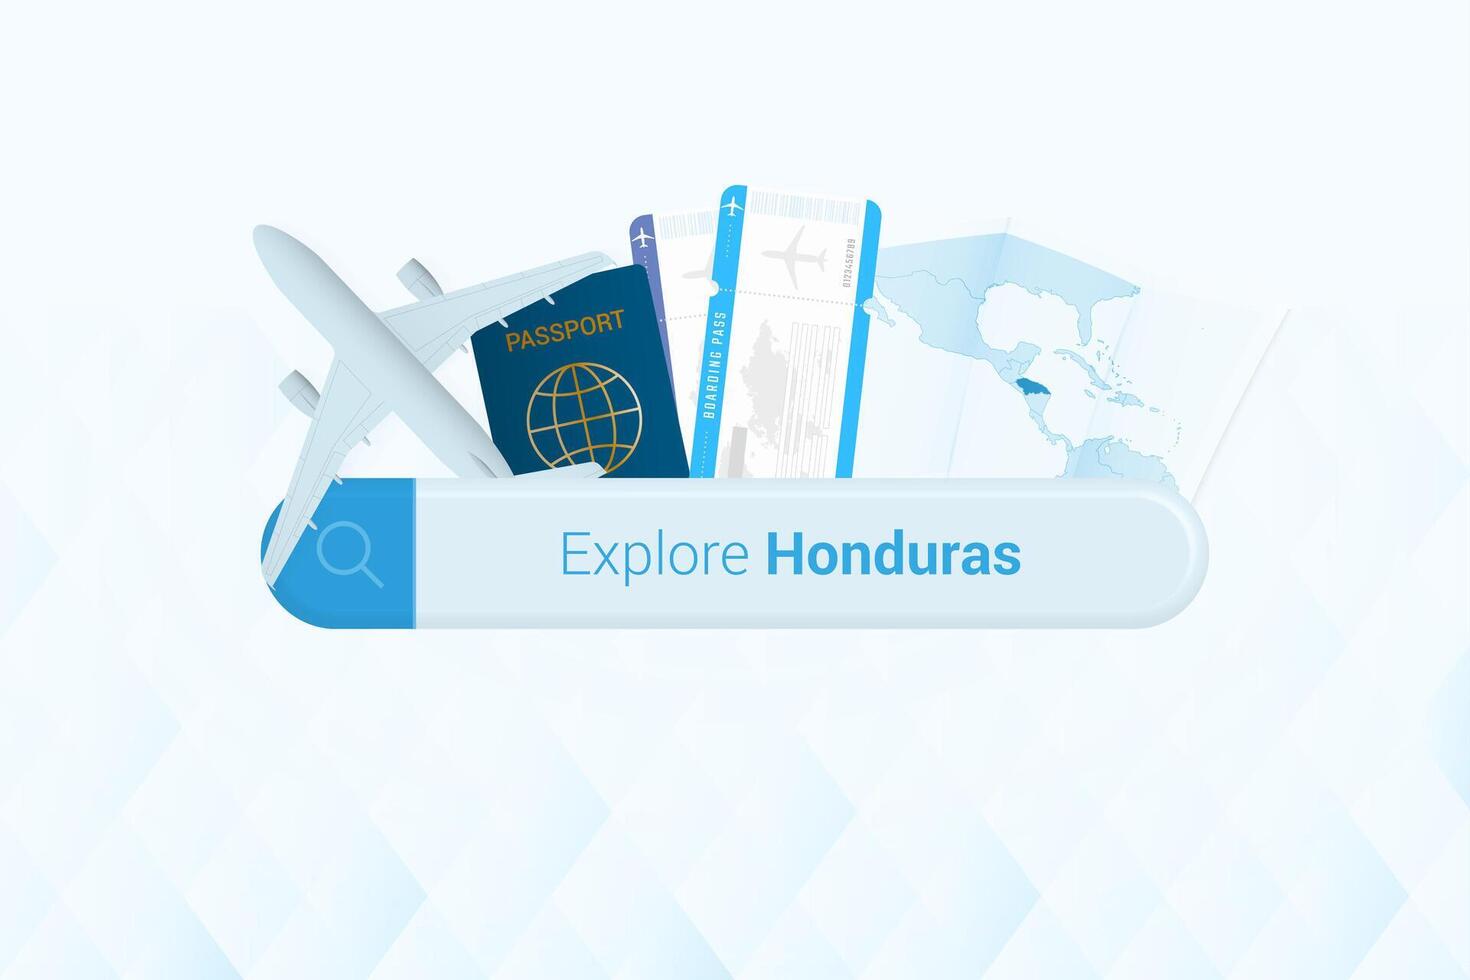 buscando Entradas a Honduras o viaje destino en Honduras. buscando bar con avión, pasaporte, embarque aprobar, Entradas y mapa. vector